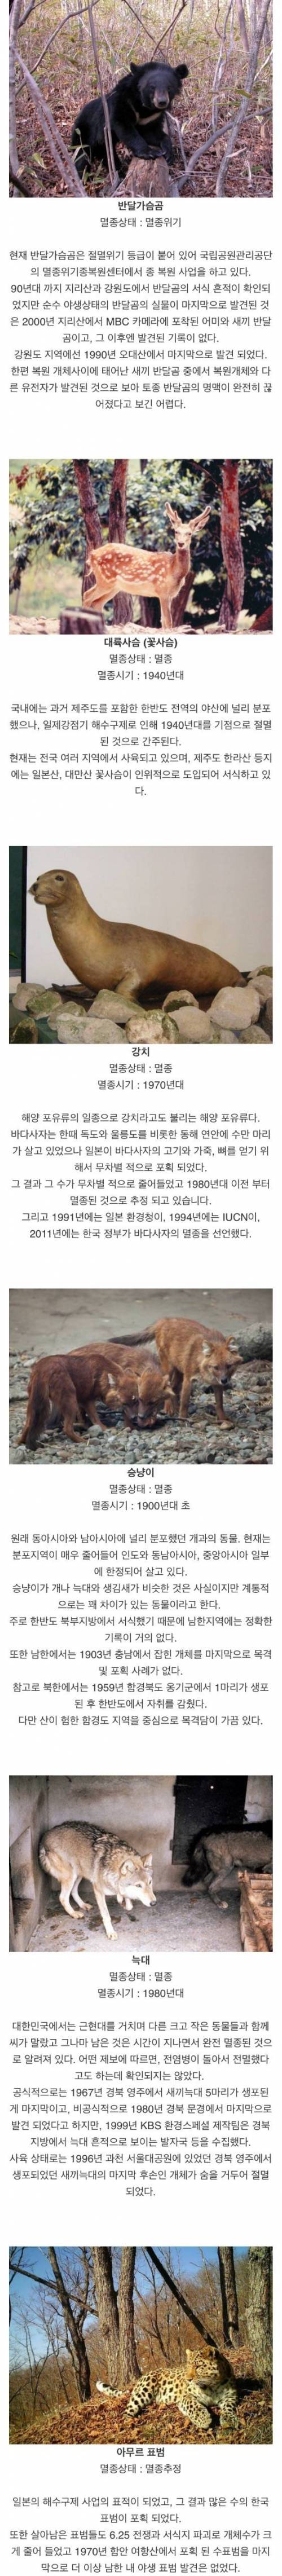 [스압] 한국에서 멸종된 동물들.jpg